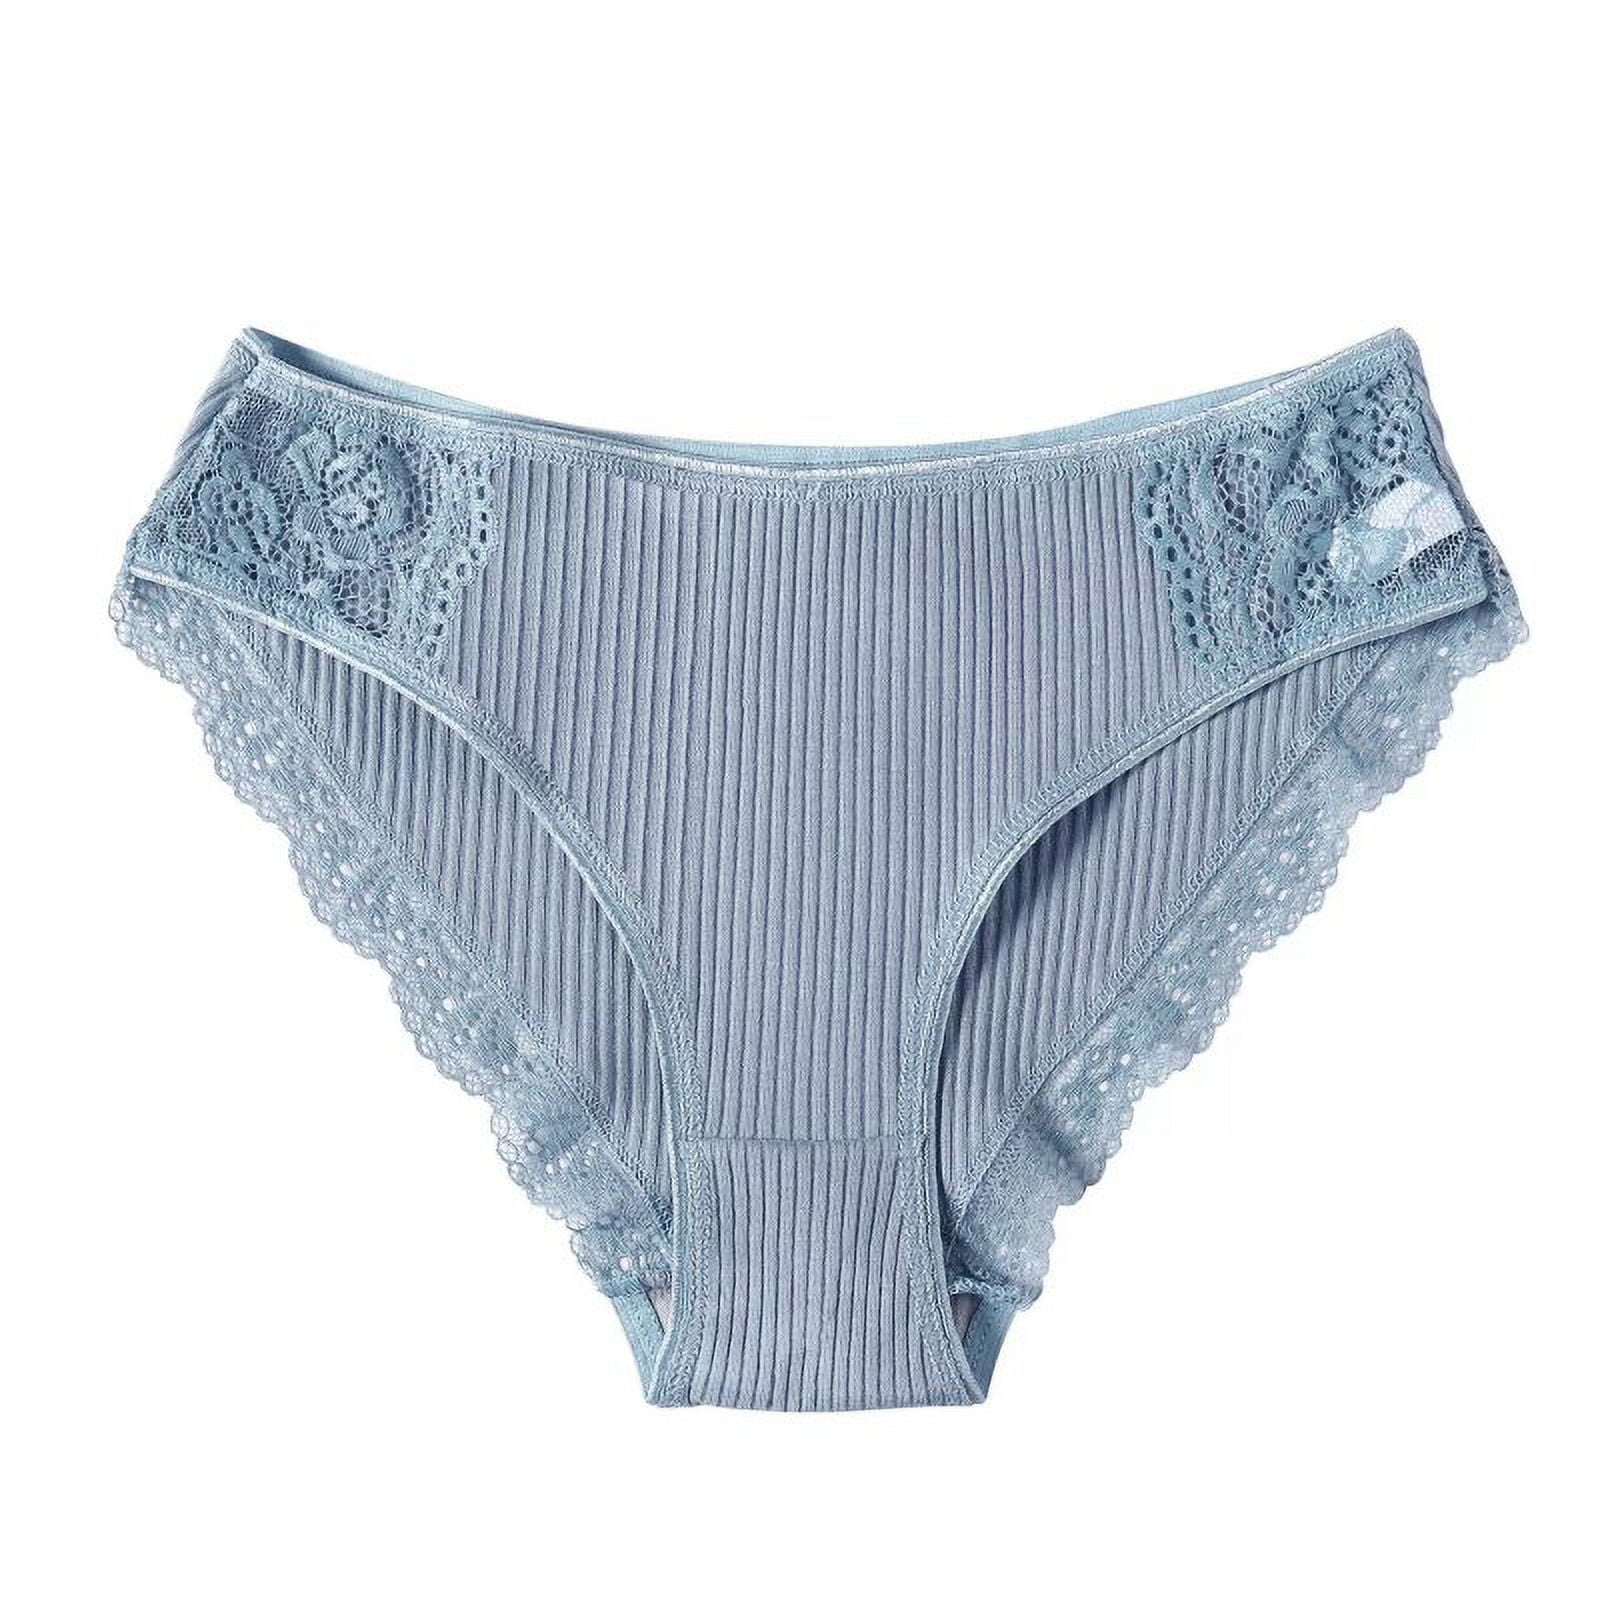 Frehsky underwear women Women Funny Lingerie Briefs Underwear Panties T  string Thongs Knickers Pink 